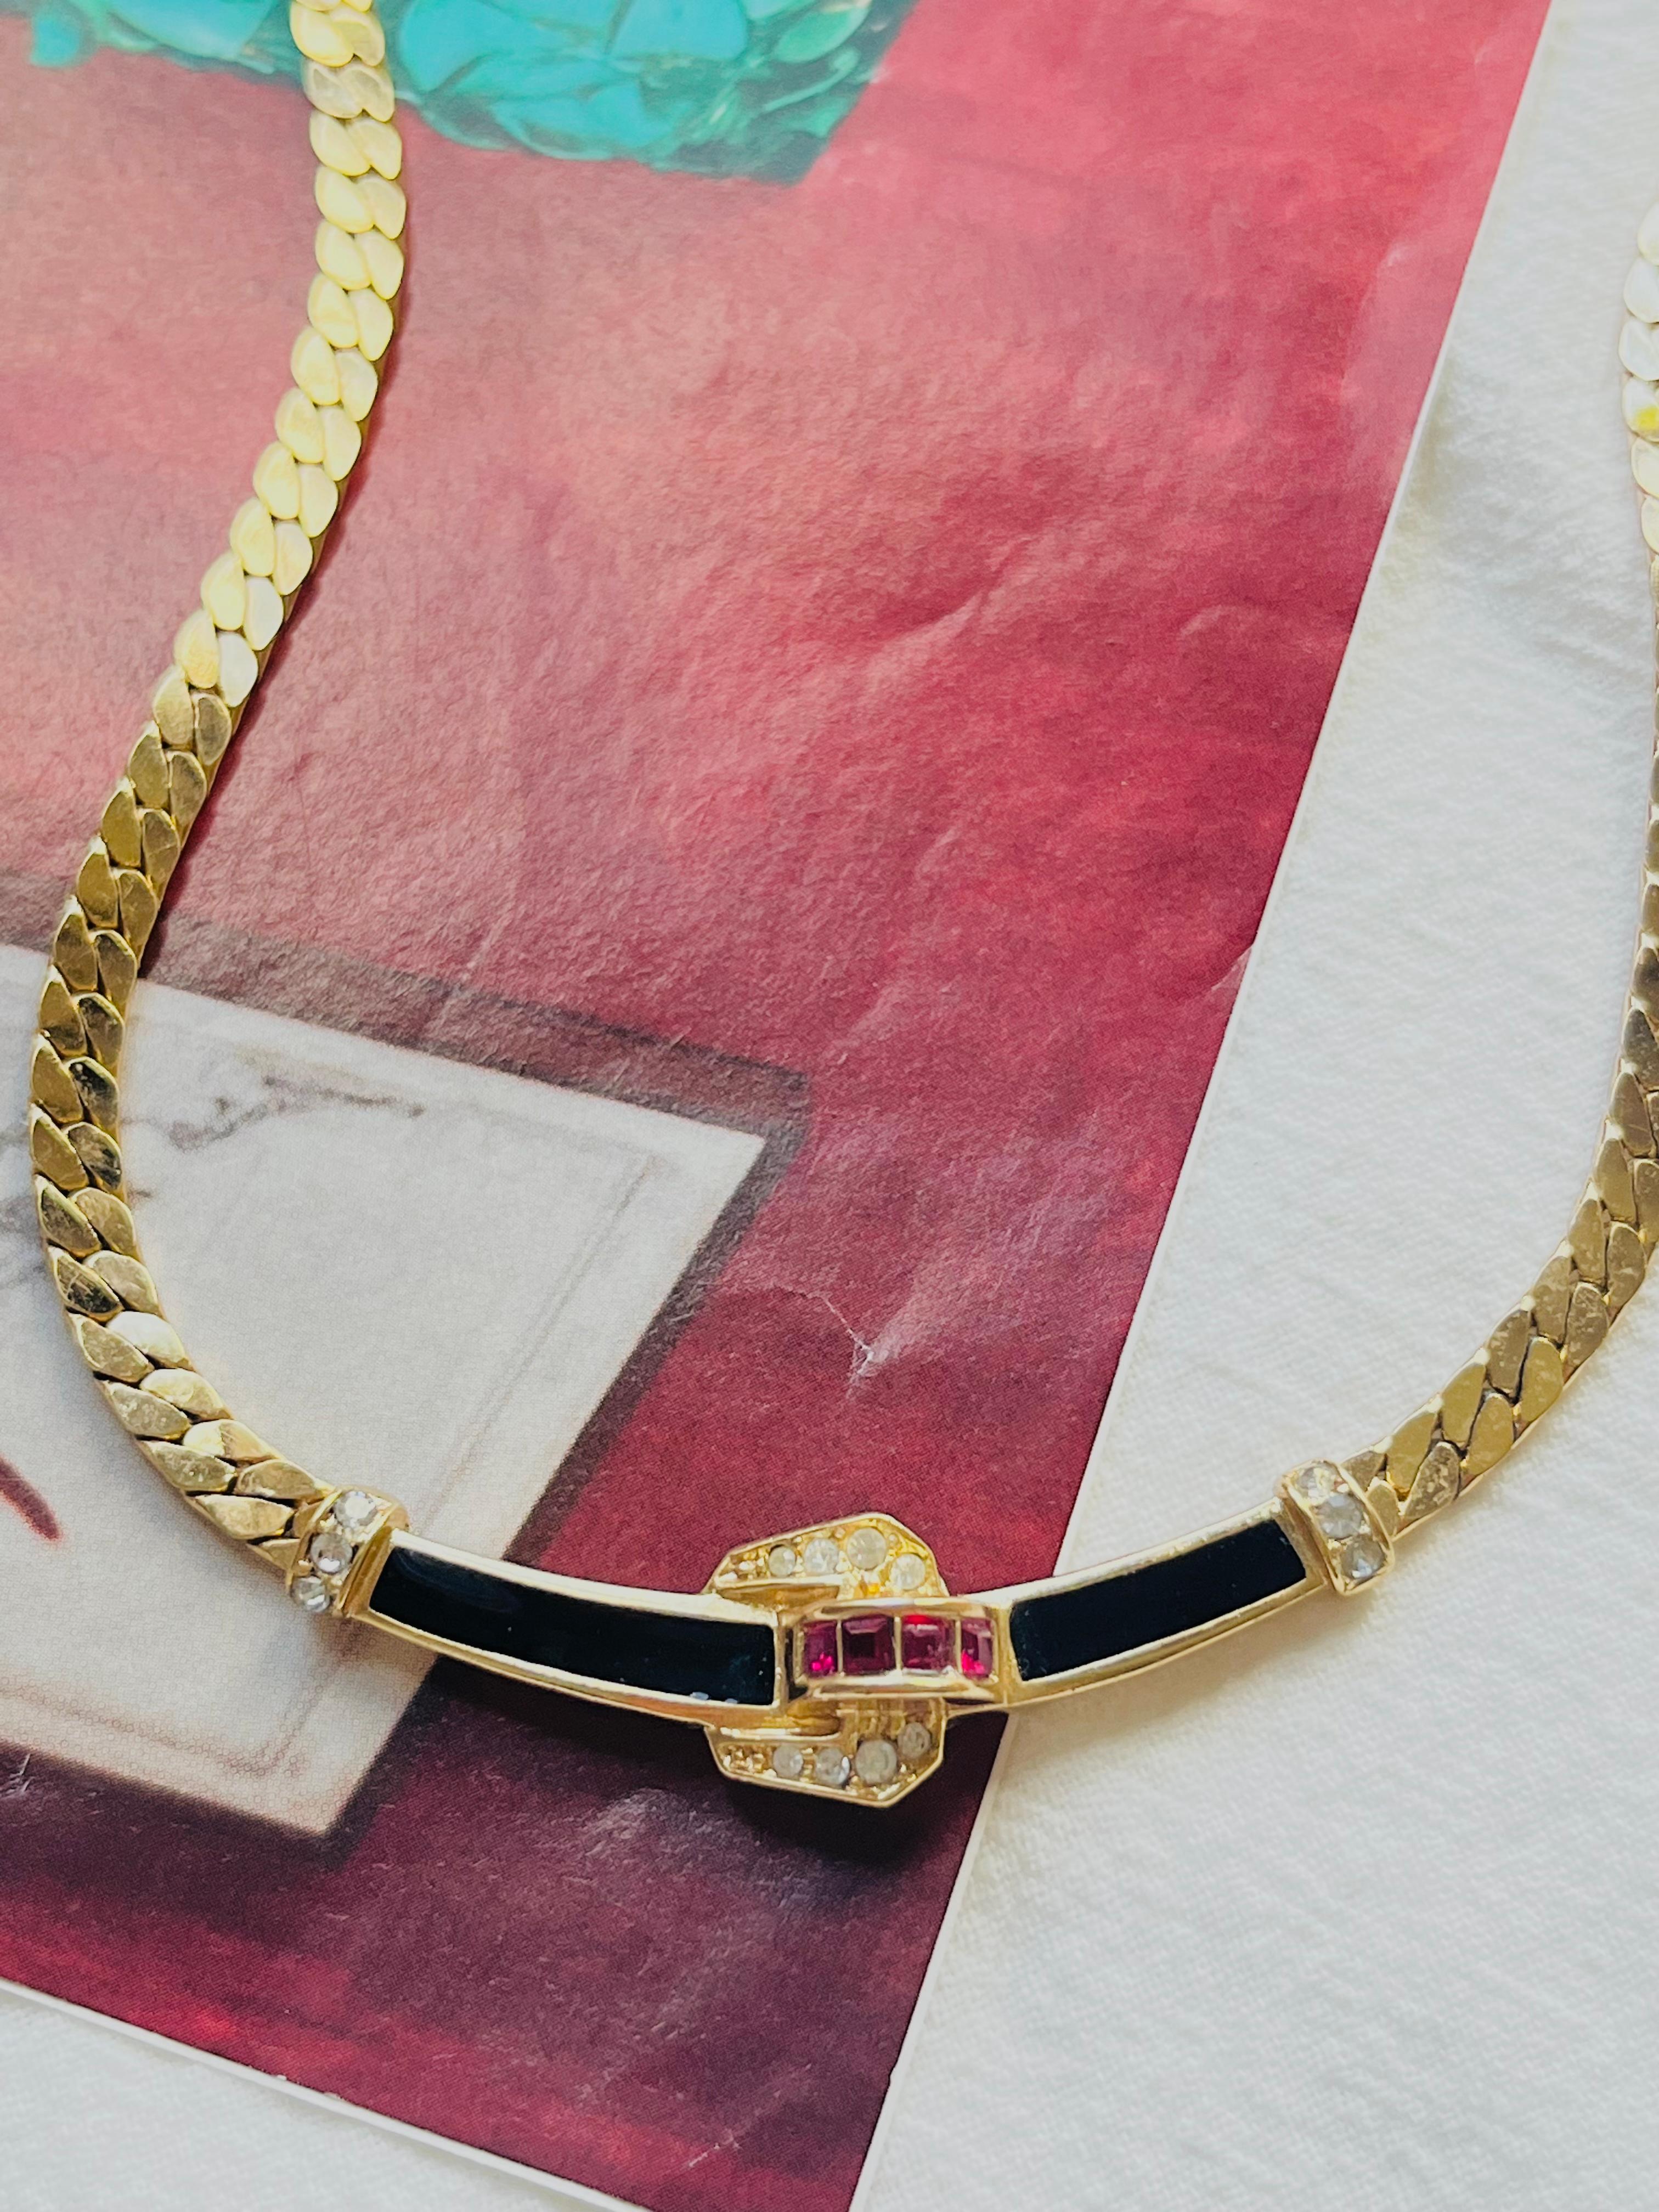 Christian Dior Vintage 1980s Black Ruby White Crystals Long Pendant Necklace, Gold Plated

Très bon état. Très nouveau. Pas de rayures ni de perte de couleur. 

Poinçon 'C.I.C.'. 100% authentique. 

Longueur : 32 cm. Extension de la chaîne : 6 cm.